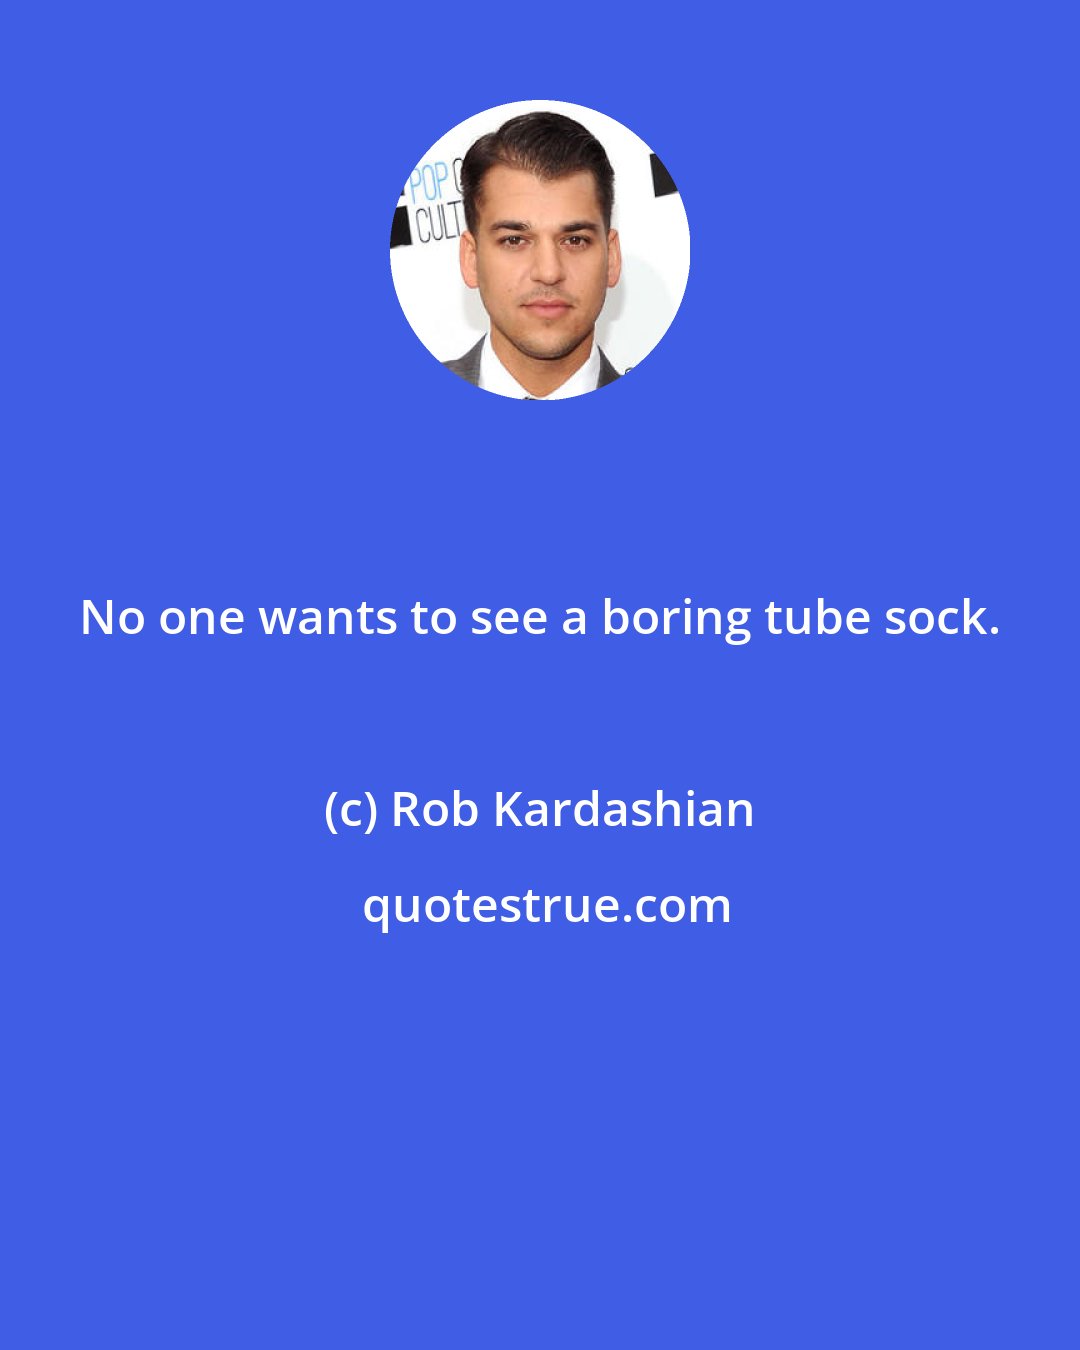 Rob Kardashian: No one wants to see a boring tube sock.